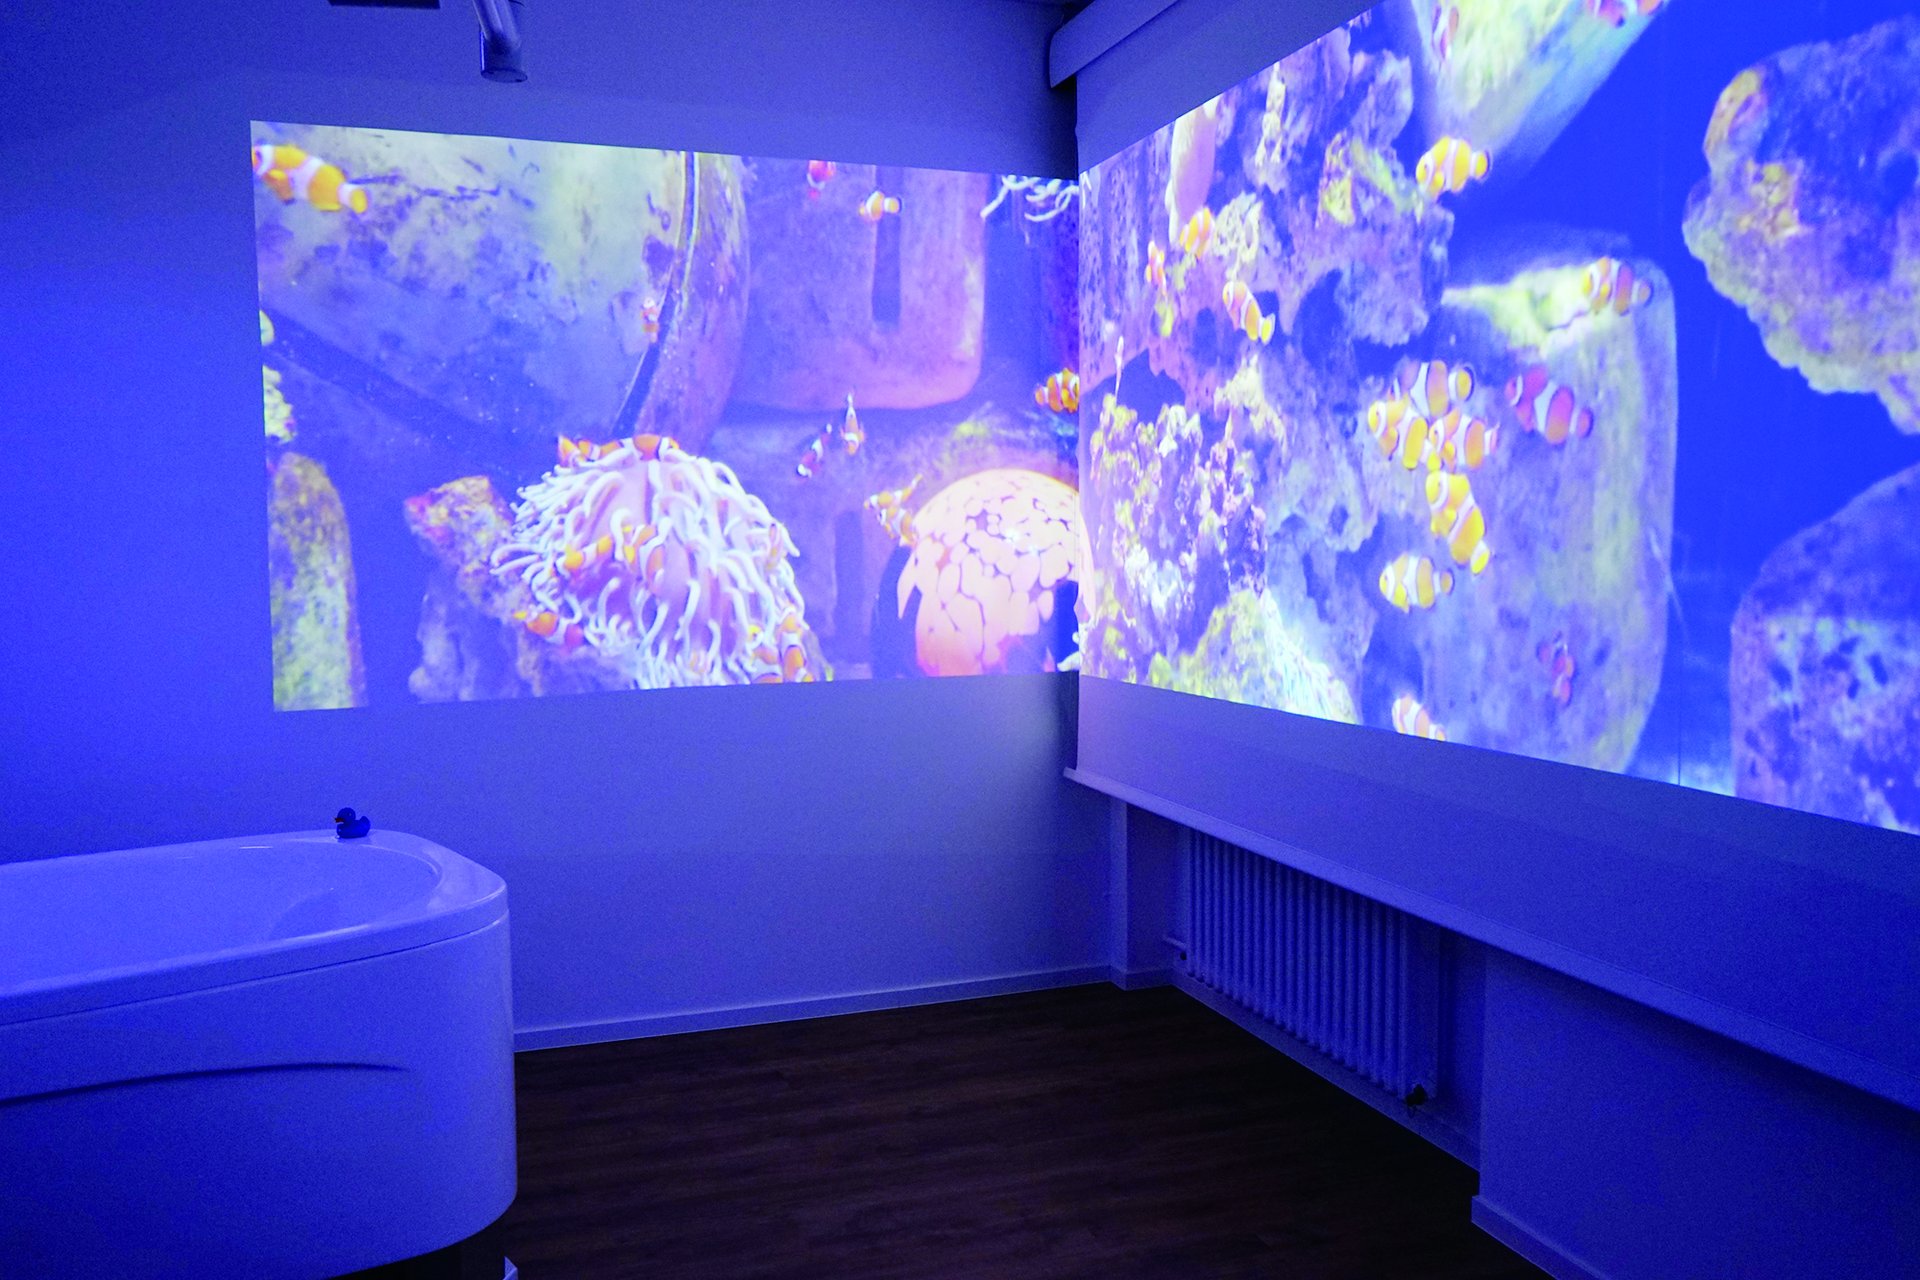 Projektion einer Unterwasserwelt im Kreißsaal am ST. Josefskrankenhaus Heidelberg